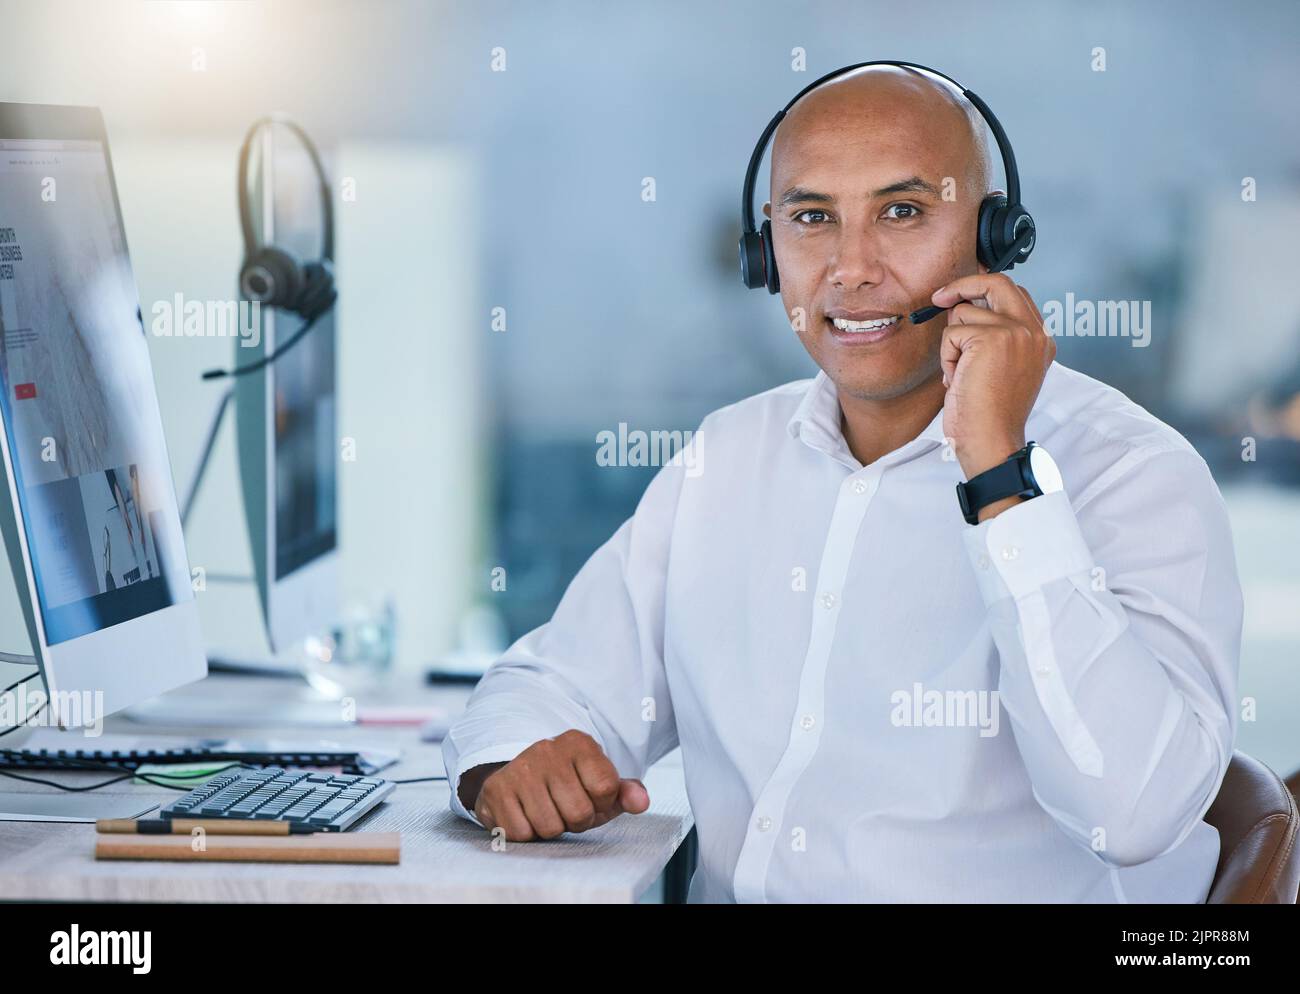 Vertriebsmitarbeiter, Callcenter-Mitarbeiter und Kundendienstmitarbeiter bieten freundliche, kompetente Kommunikation während der Arbeit in einem Büro. Hochformat Stockfoto